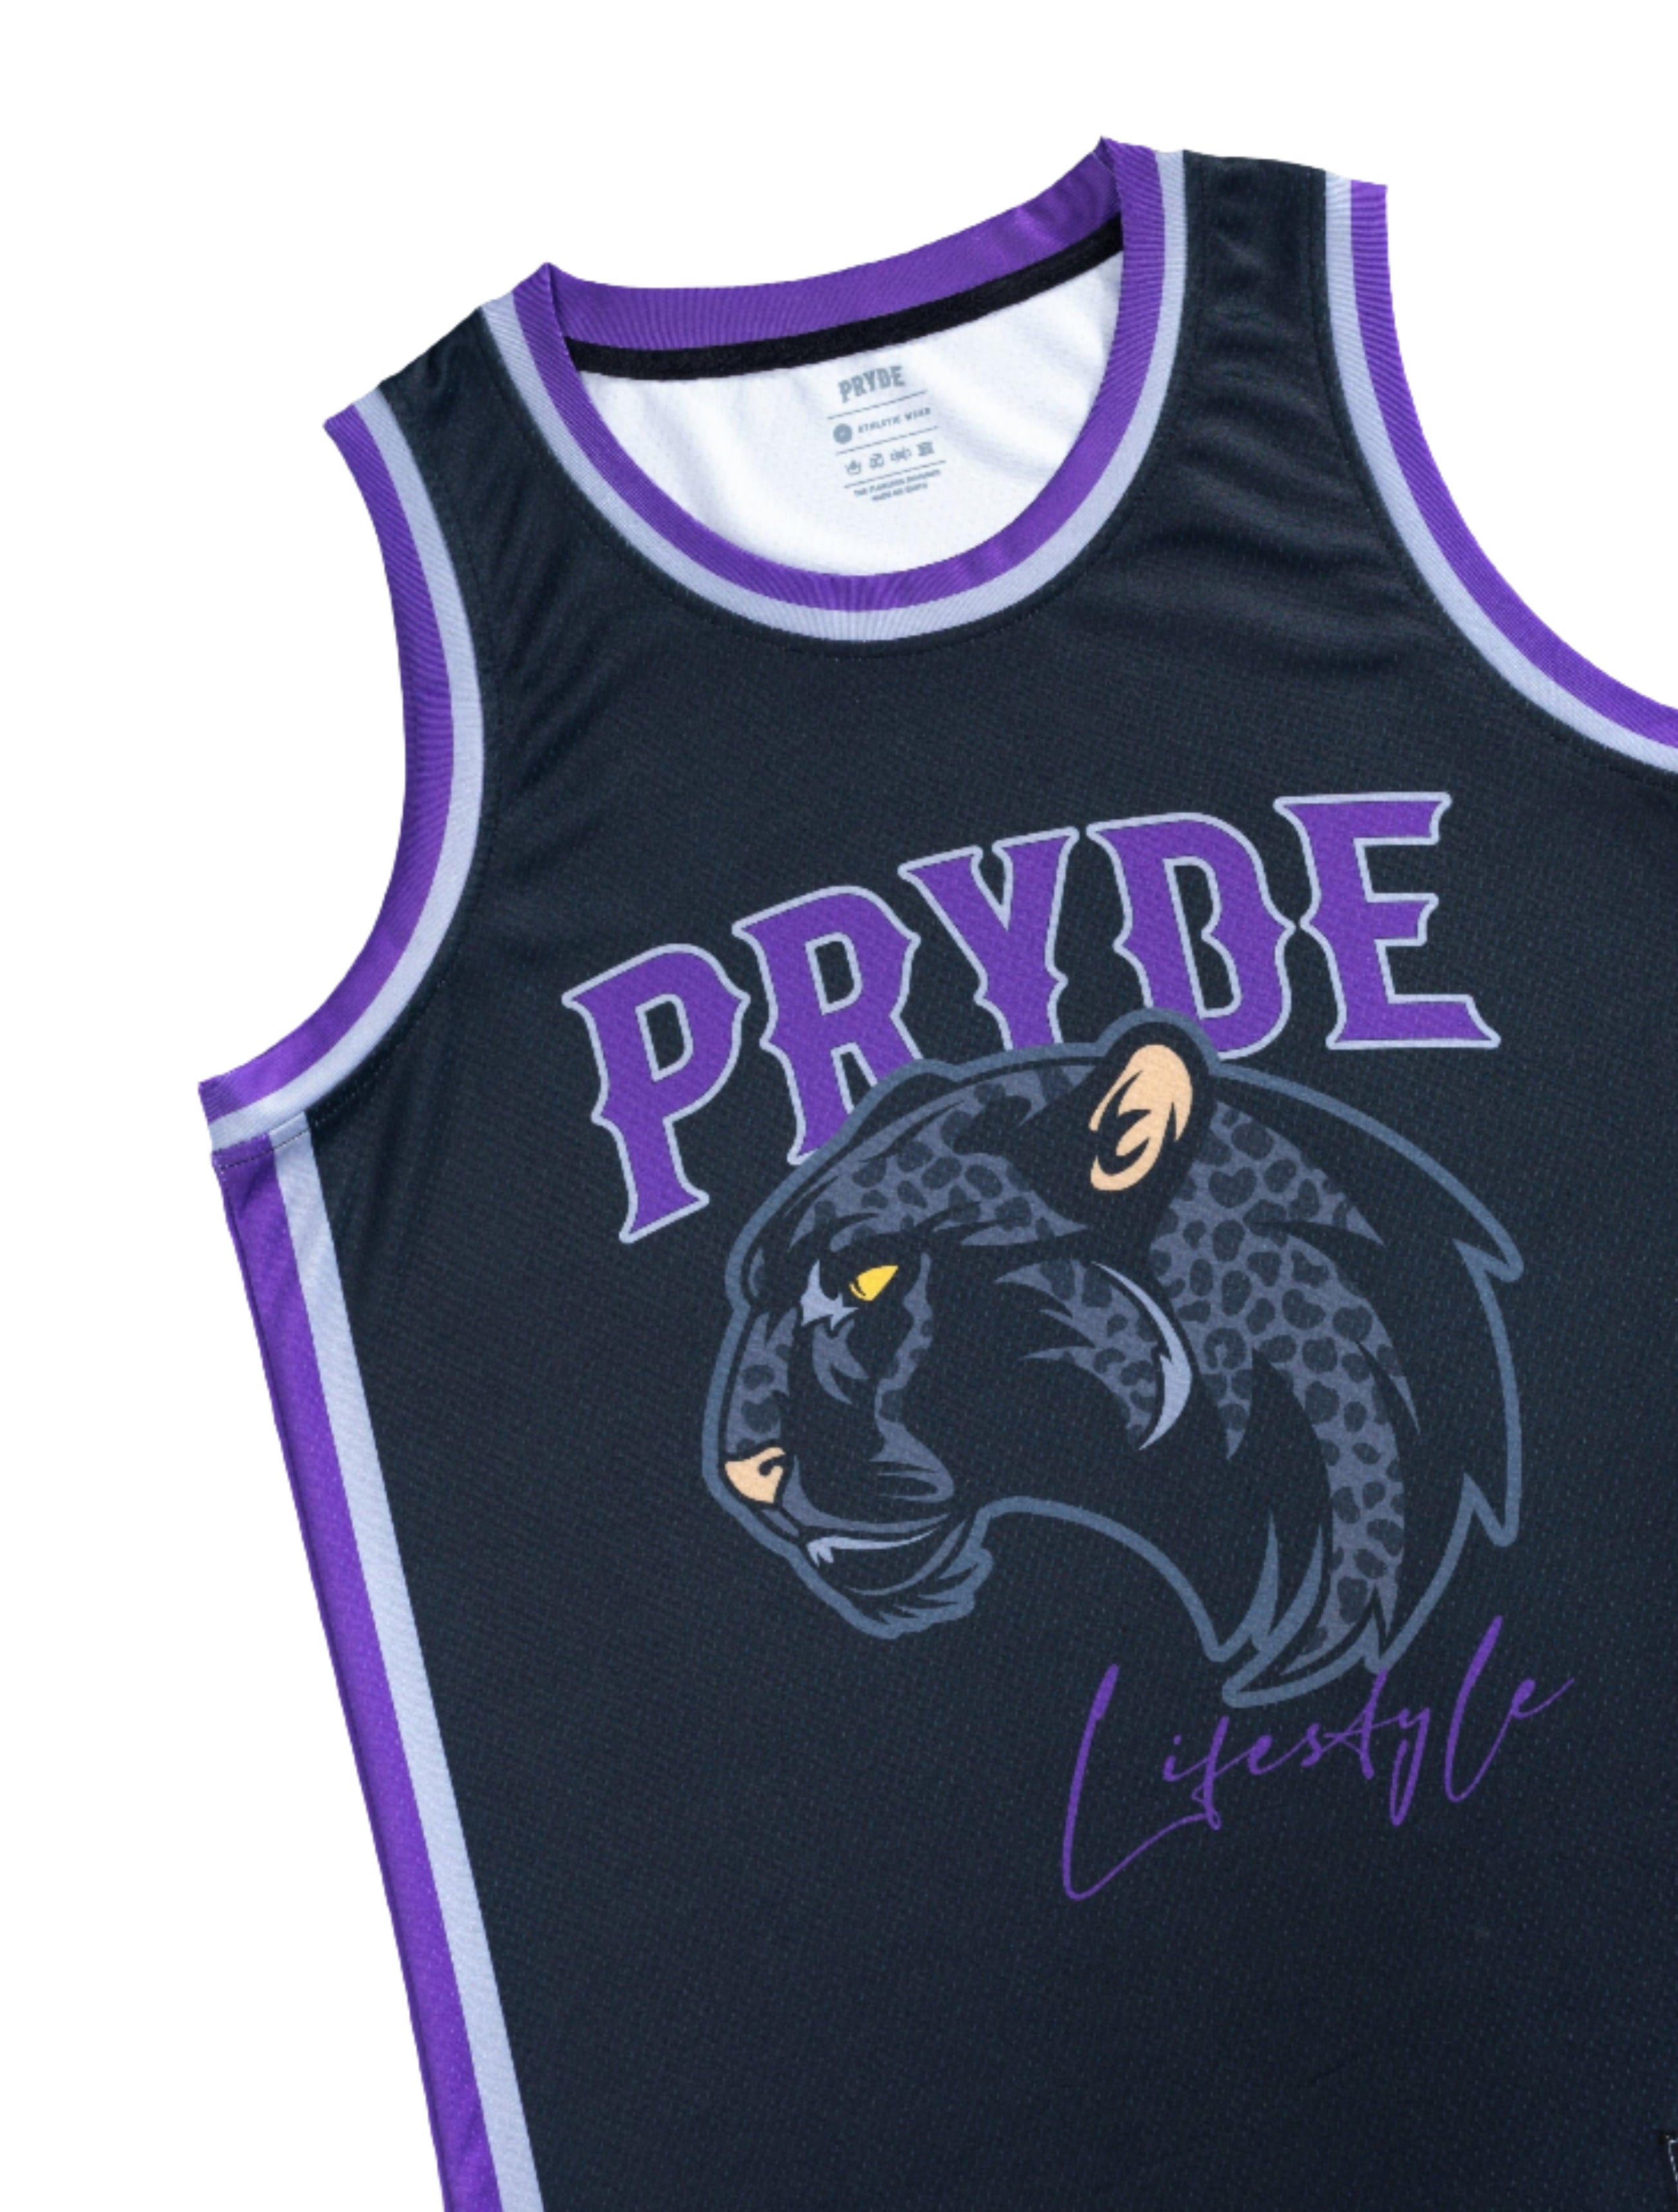 PRYDE Leopard Jersey - Black, Silver & Purple - Muay Thailand